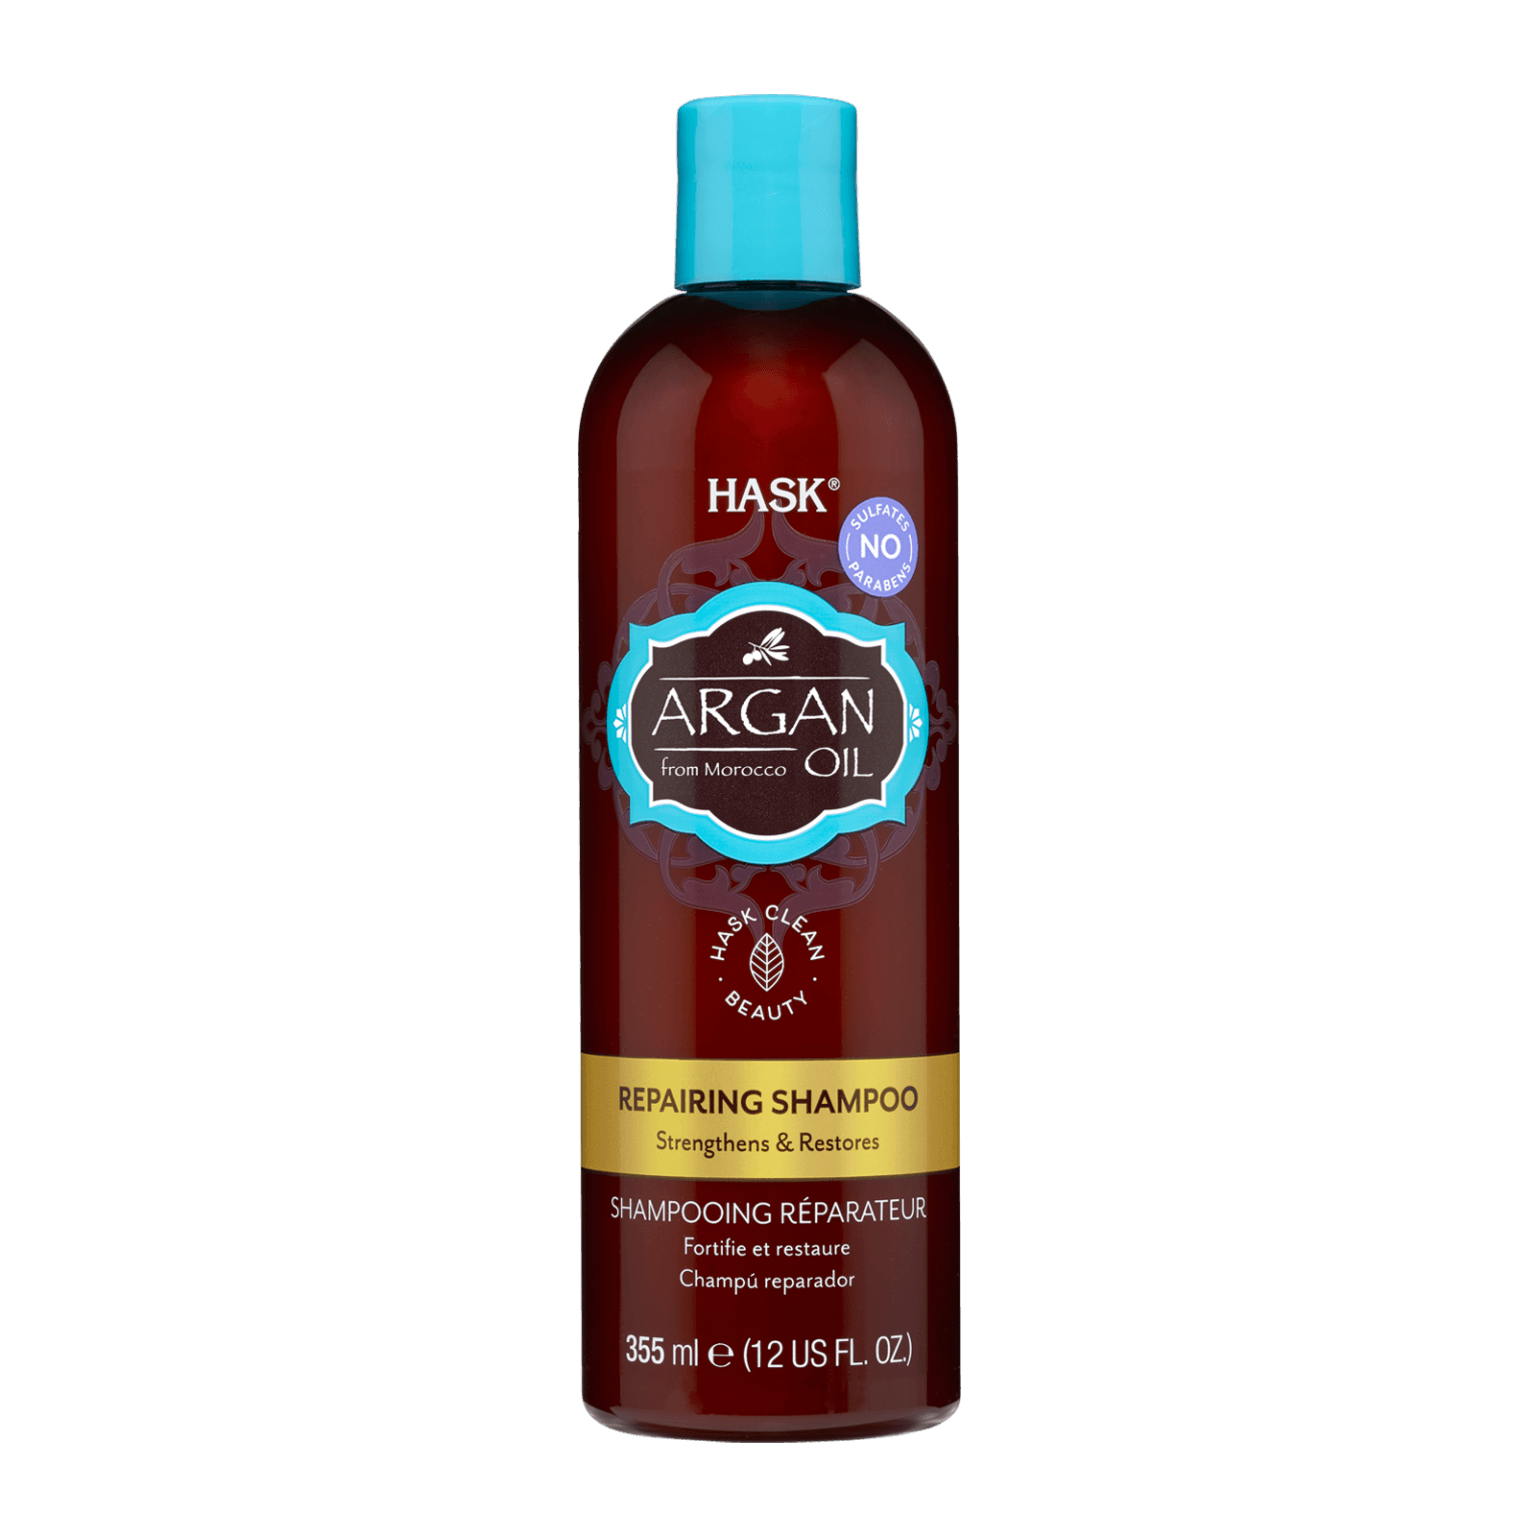 Hask Argan Oil Repairing Shampoo 355 ml - Mrayti Store